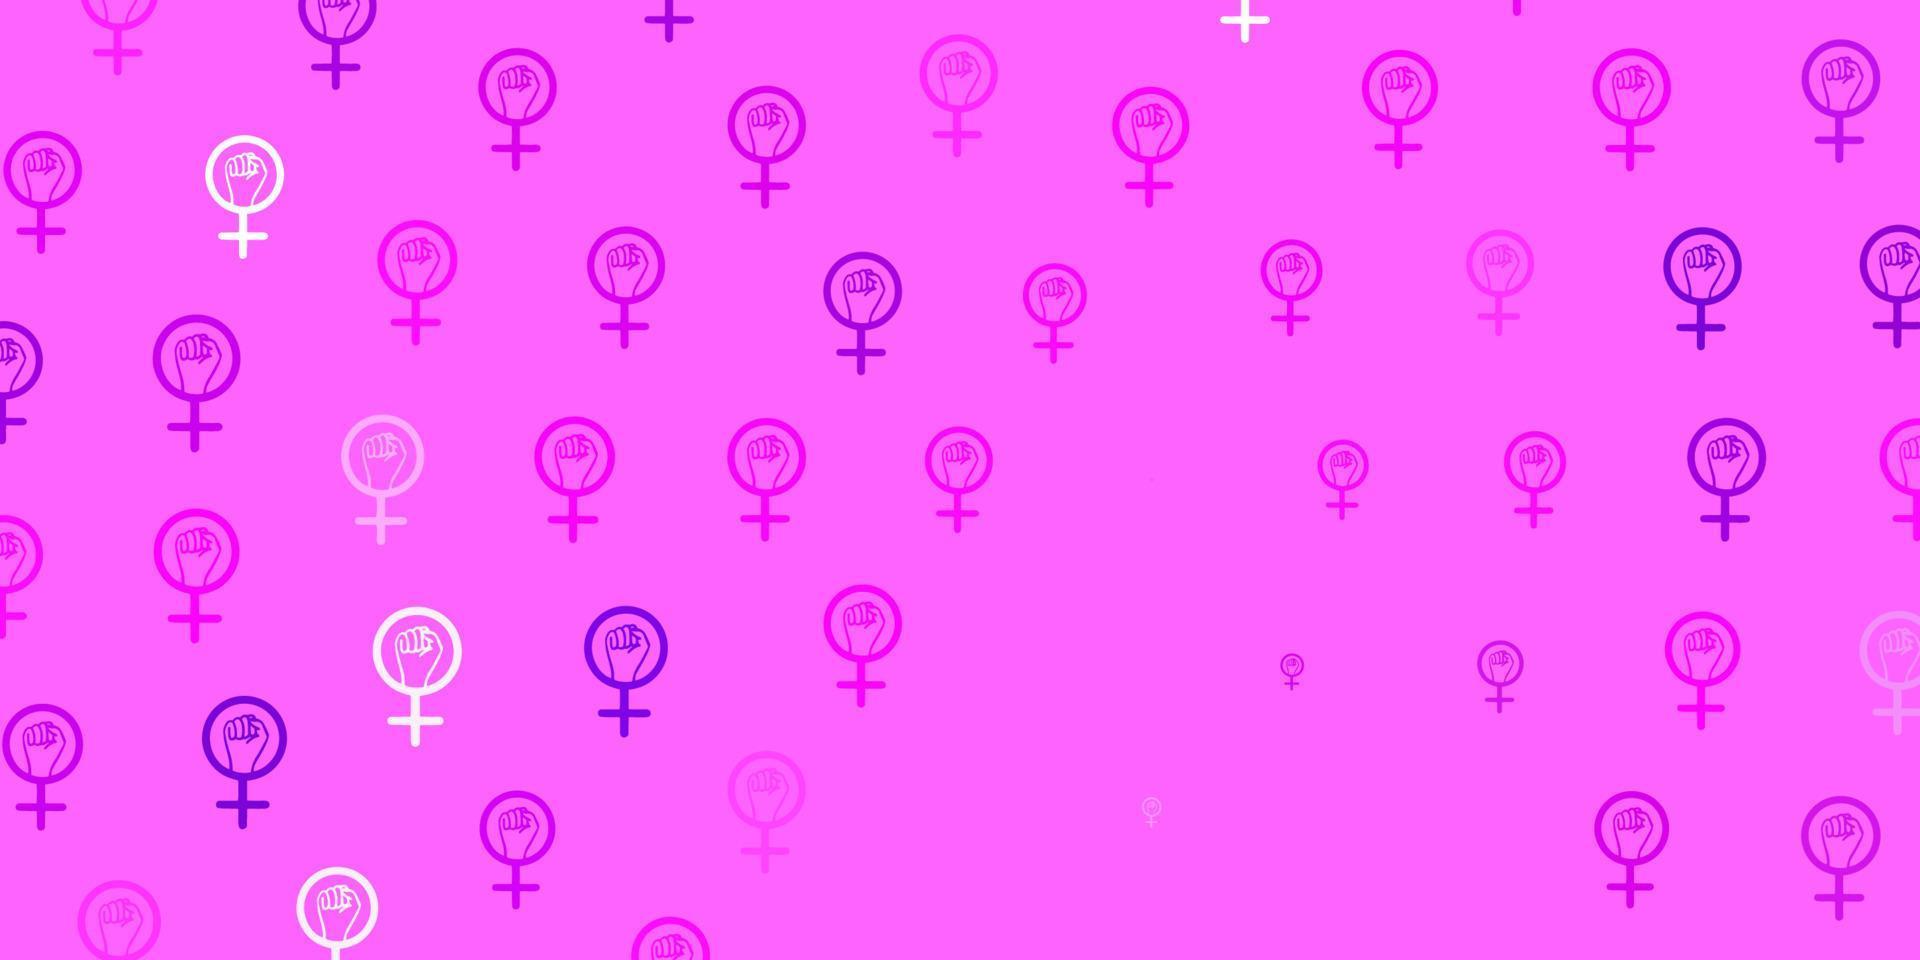 padrão de vetor rosa claro com elementos do feminismo.